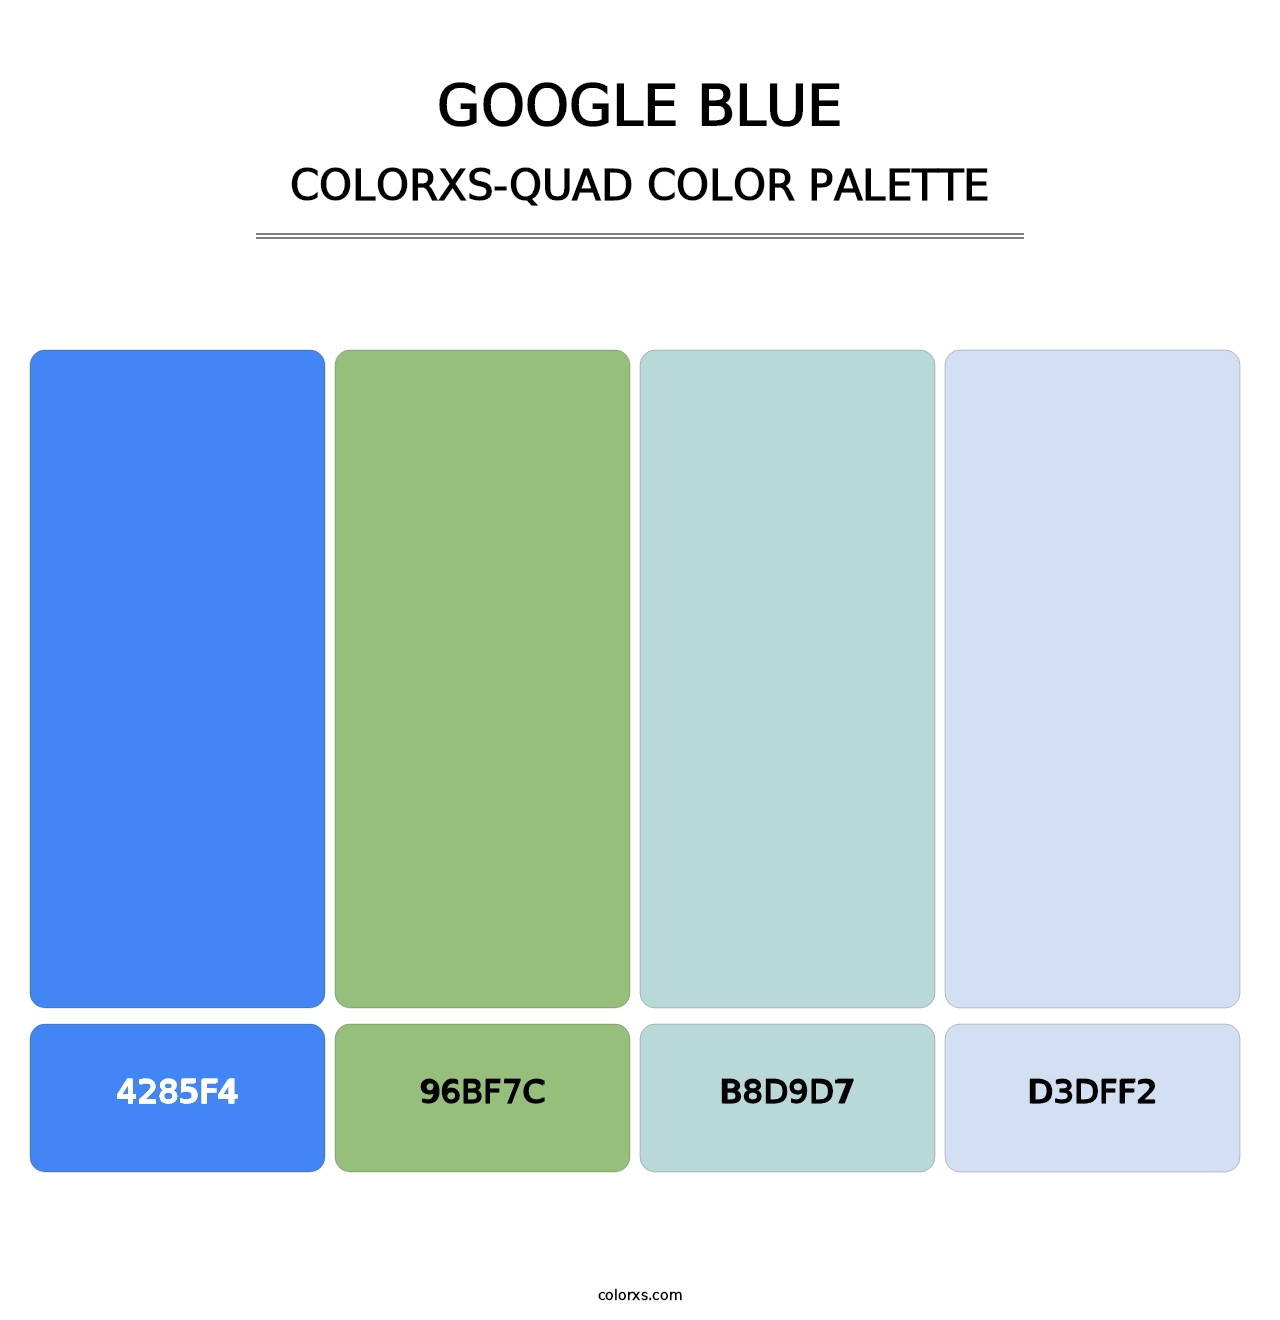 Google Blue - Colorxs Quad Palette